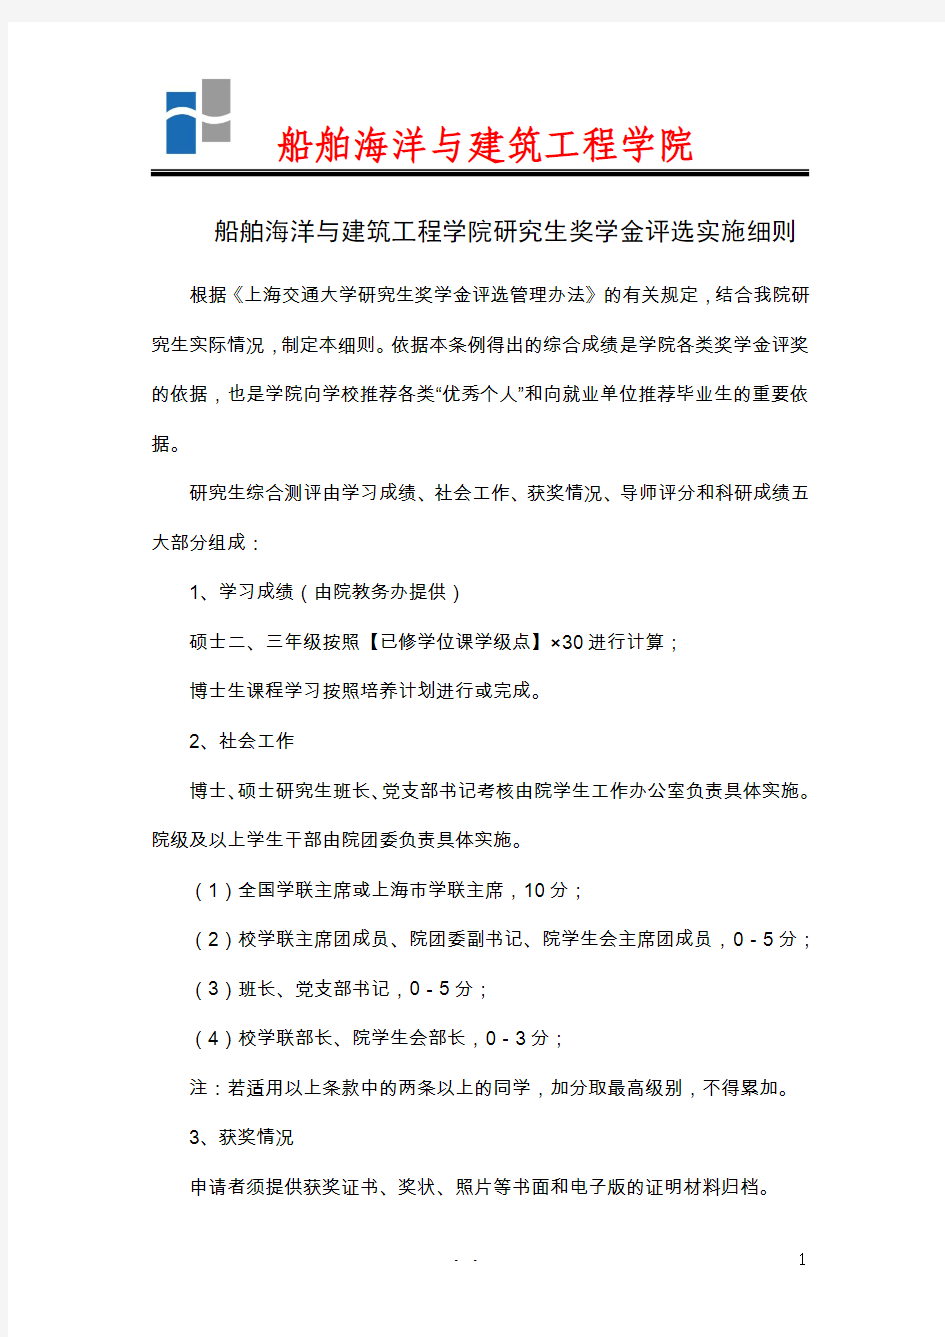 上海交通大学船舶海洋与建筑工程学院研究生奖学金评选实施细则